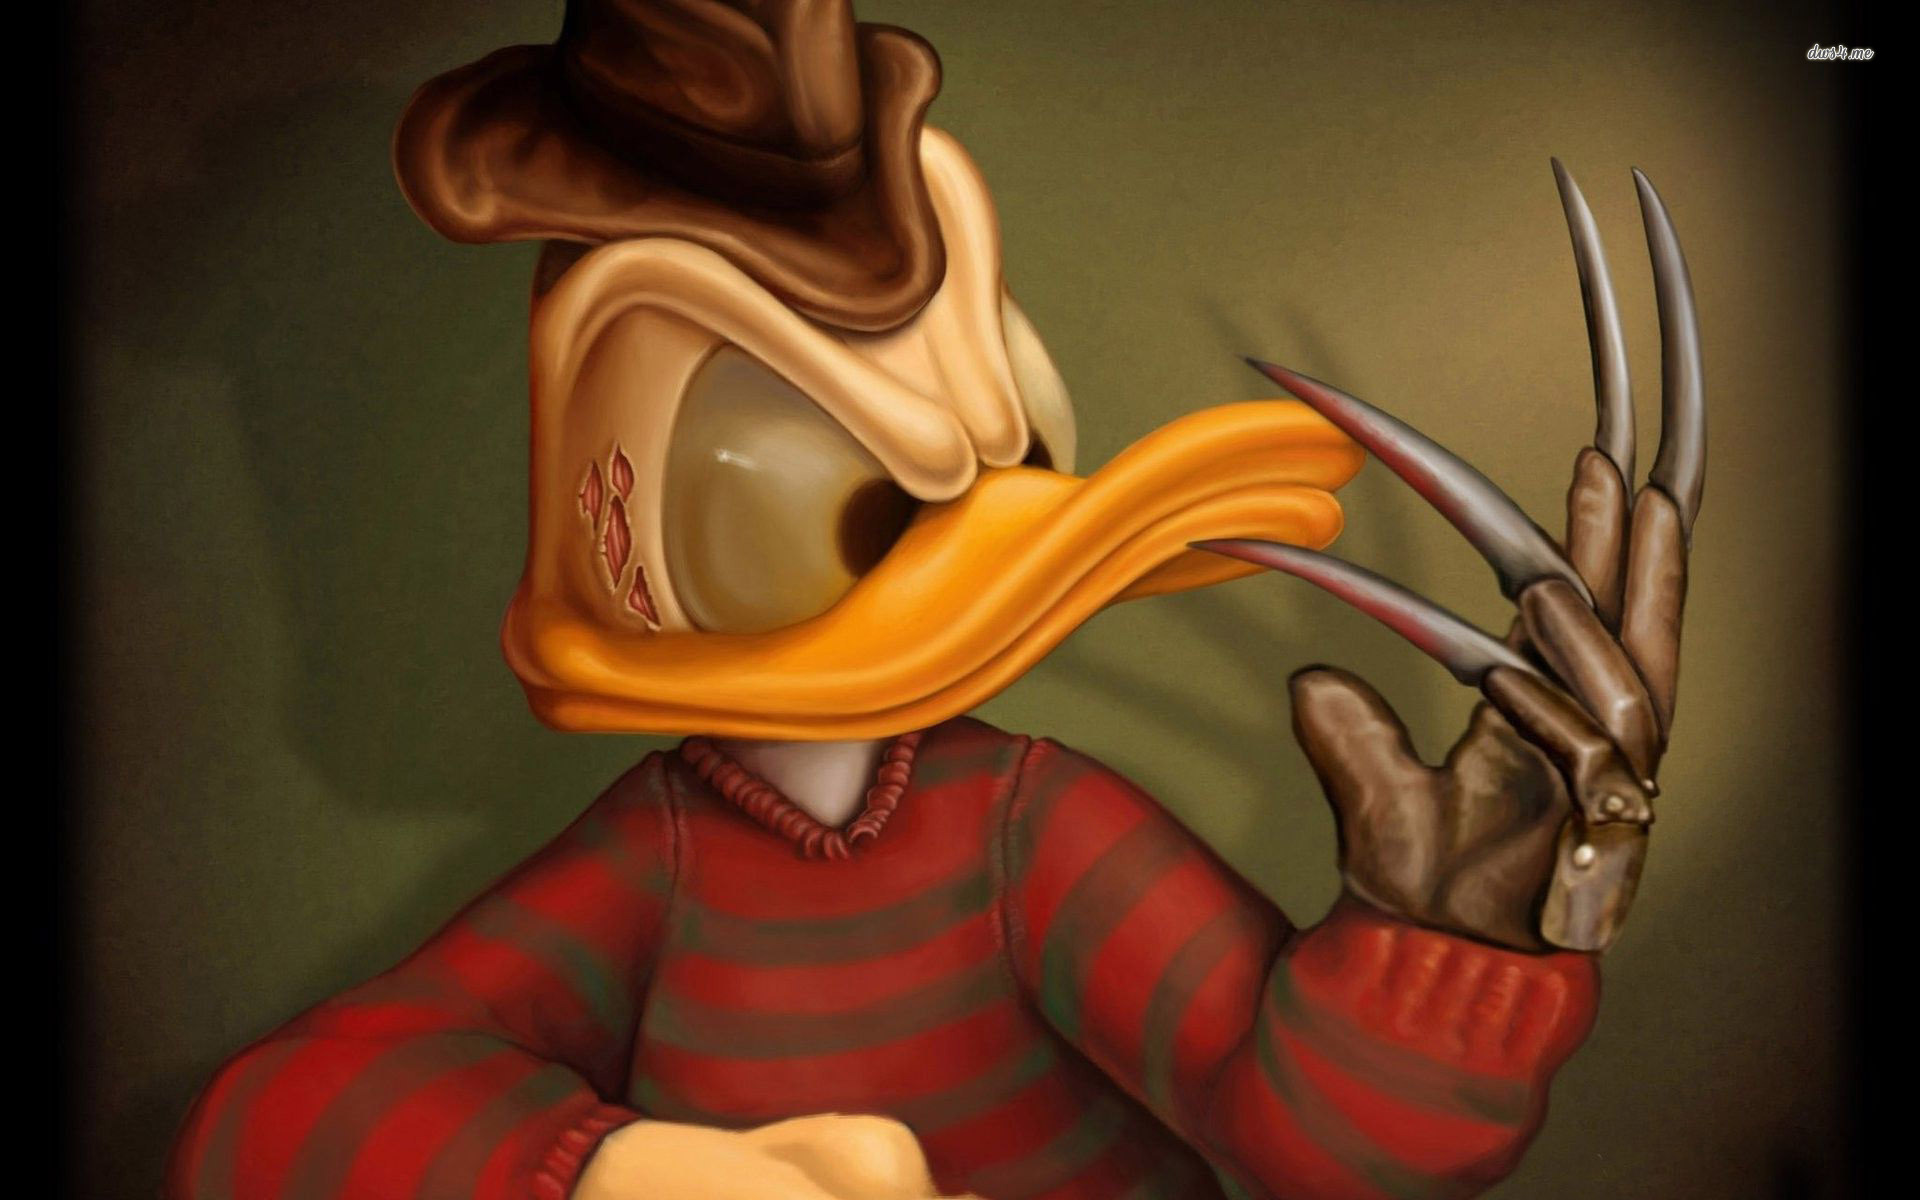 Donald duck as freddy krueger wallpaper Wallpaper Wide HD